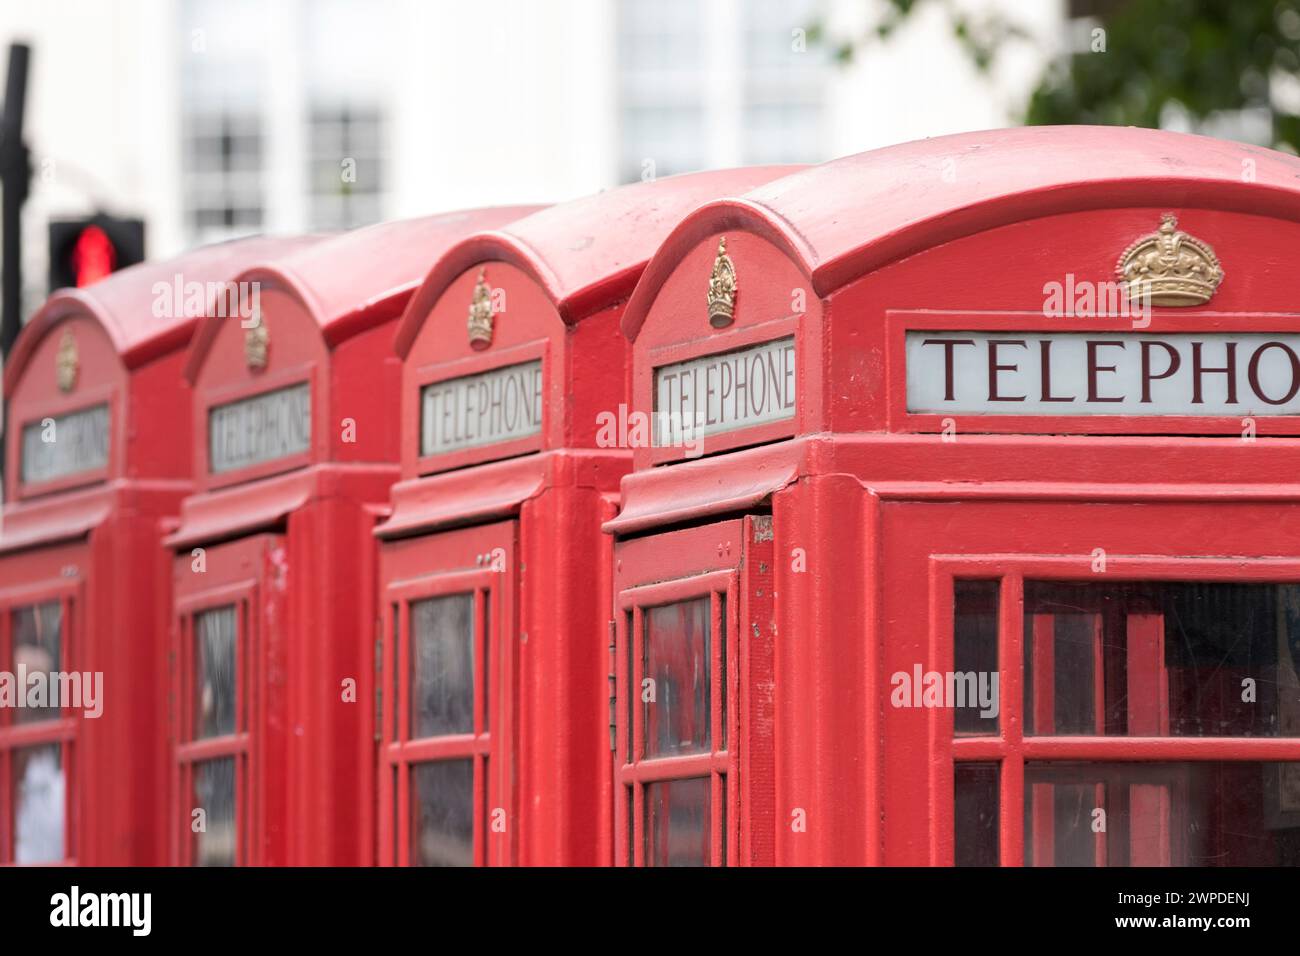 Regno Unito, Londra, scatole telefoniche rosse. Foto Stock